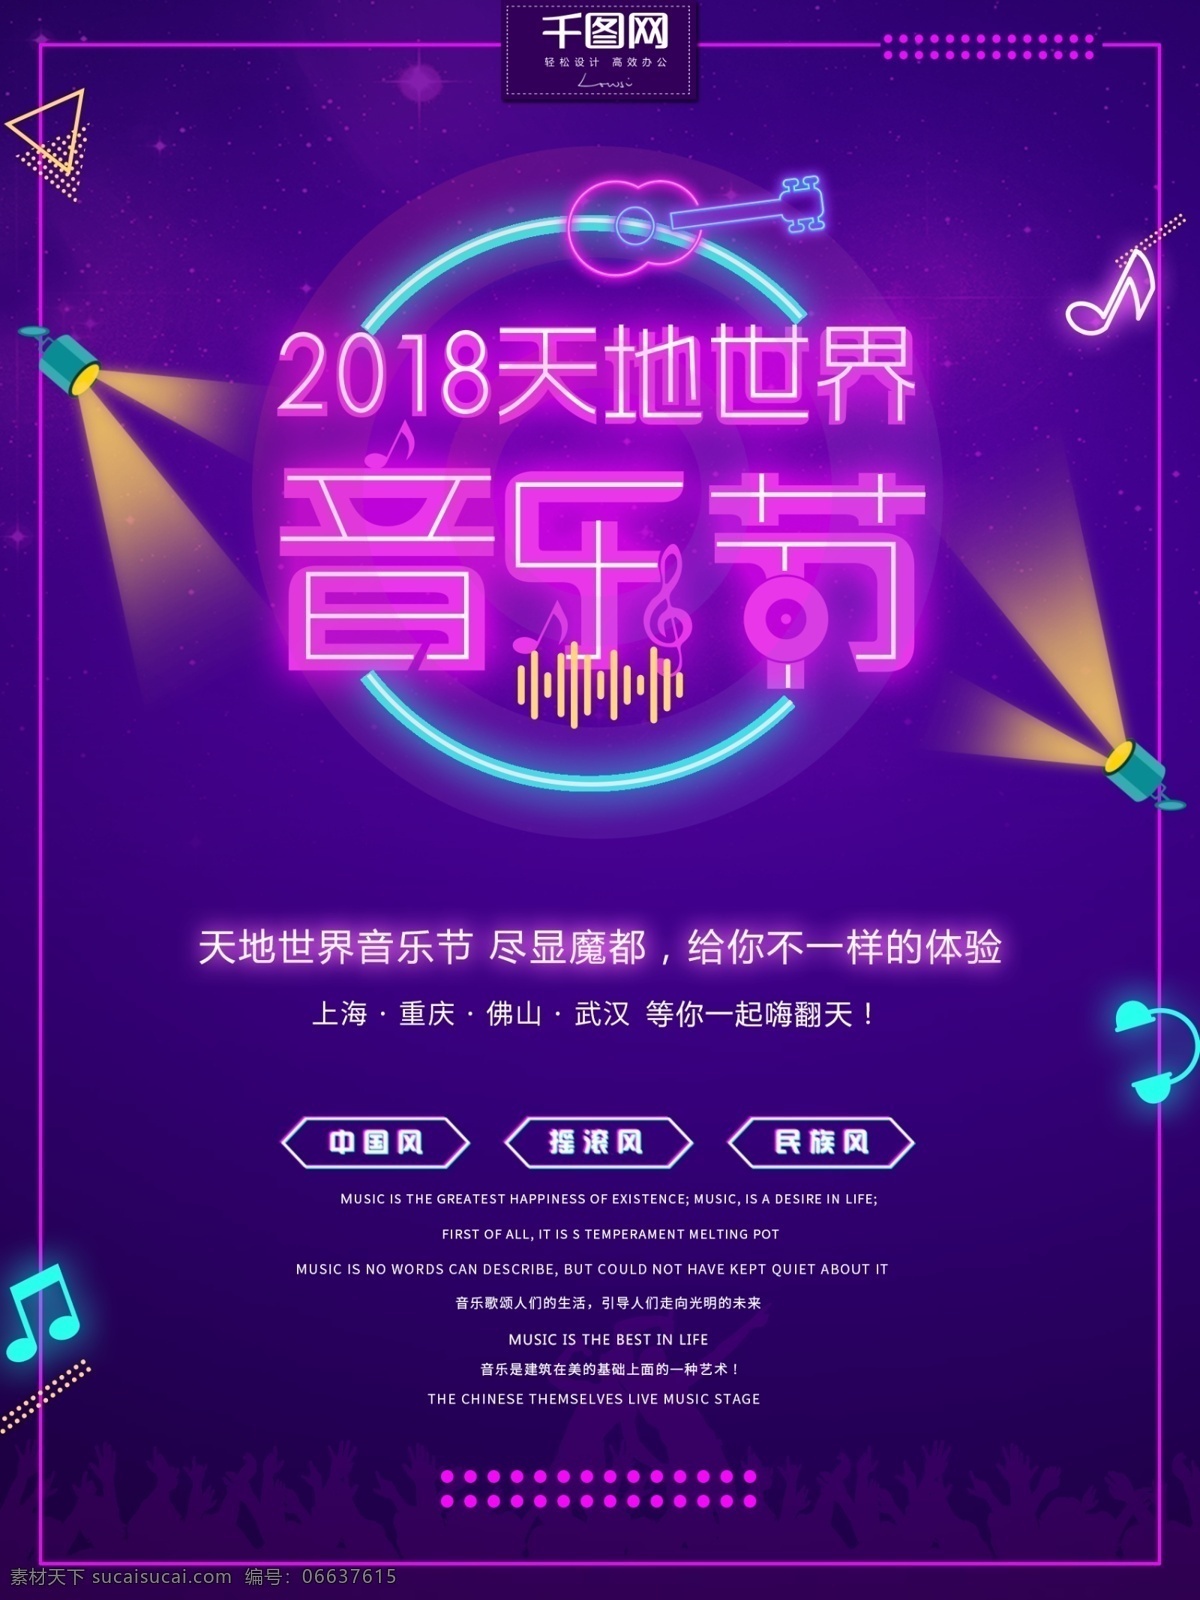 炫彩 霓虹灯 2018 天地 世界 音乐节 海报 音乐节海报 世界音乐节